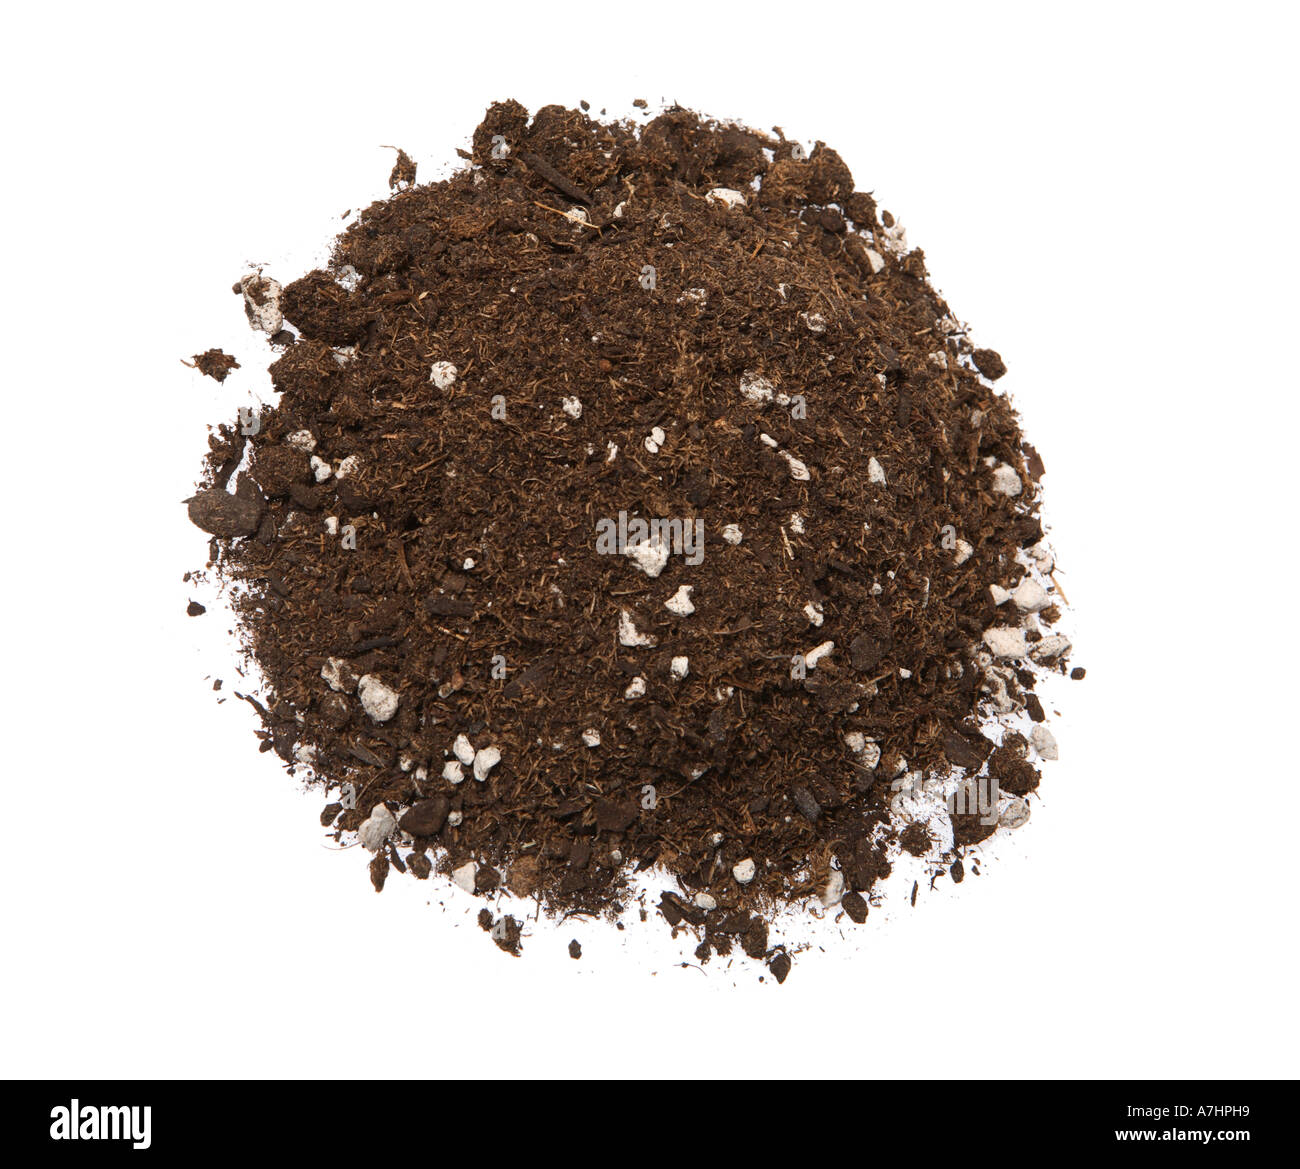 Potting soil Stock Photo